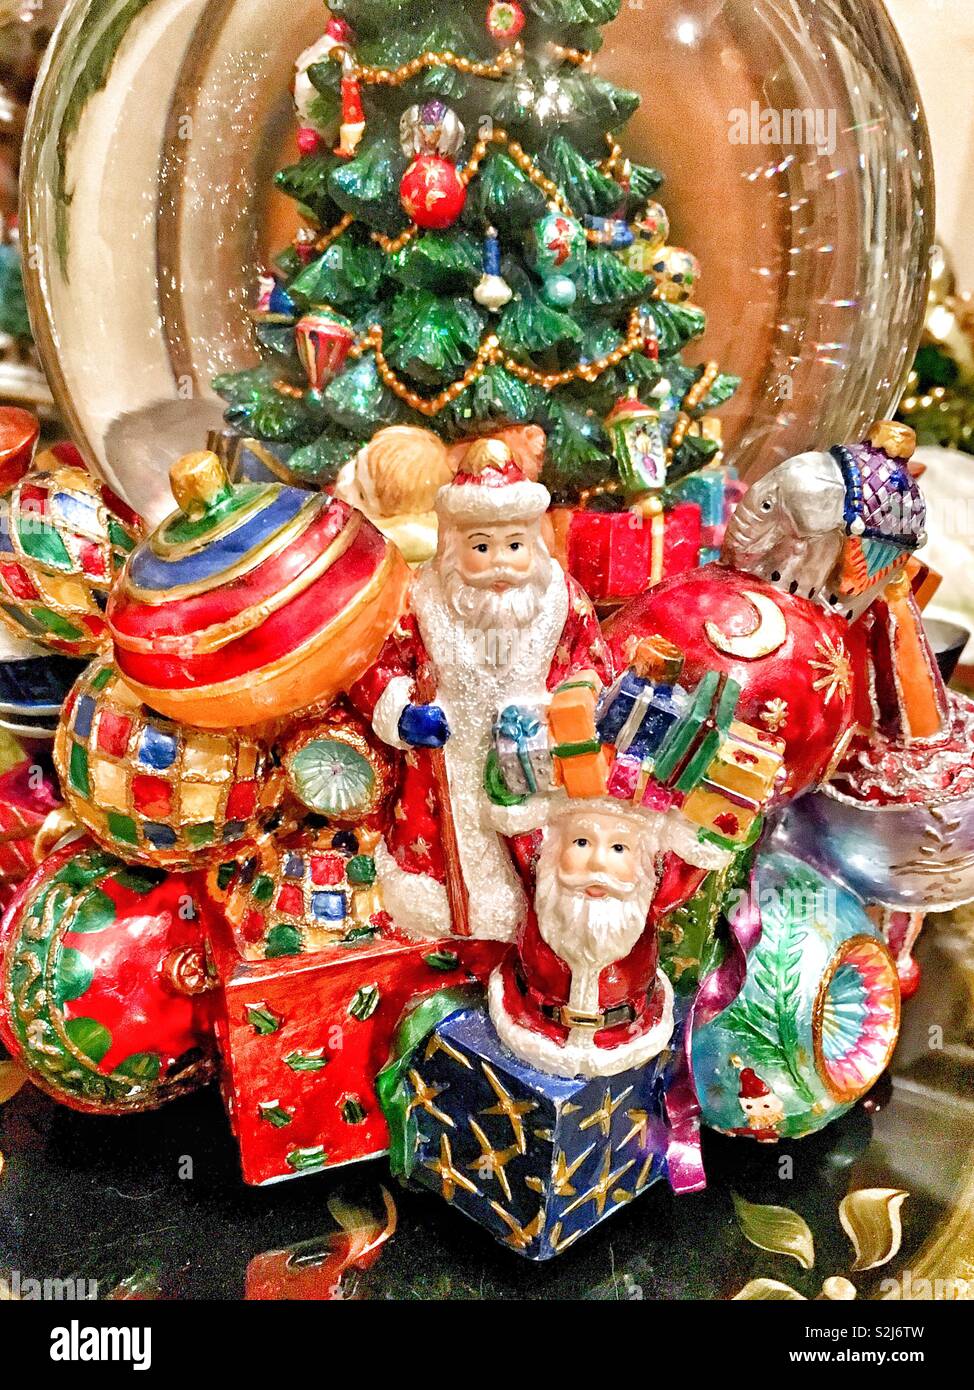 Globo de Nieve con árbol de Navidad decorado y Santa figurillas celebrar muchas presenta rodeado por gigantes adornos navideños Foto de stock